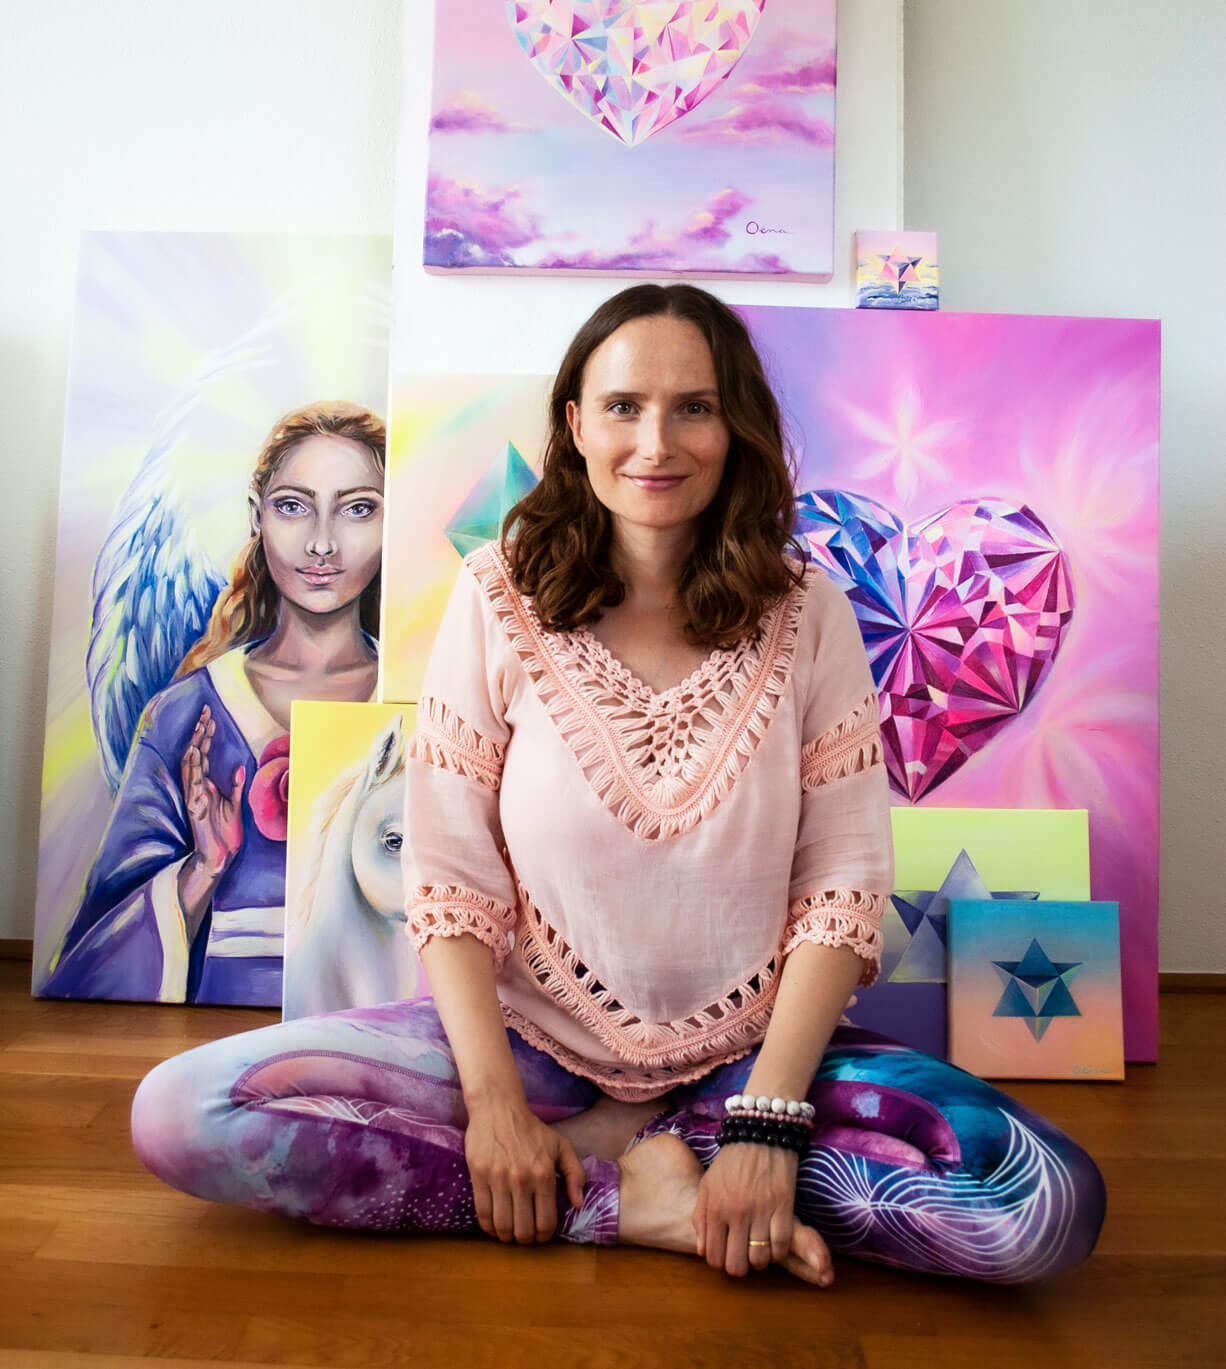 Spirituelle Künstlerin vor Kunstwerken mit Engel; Herzkristallen und heiligen Geometrien